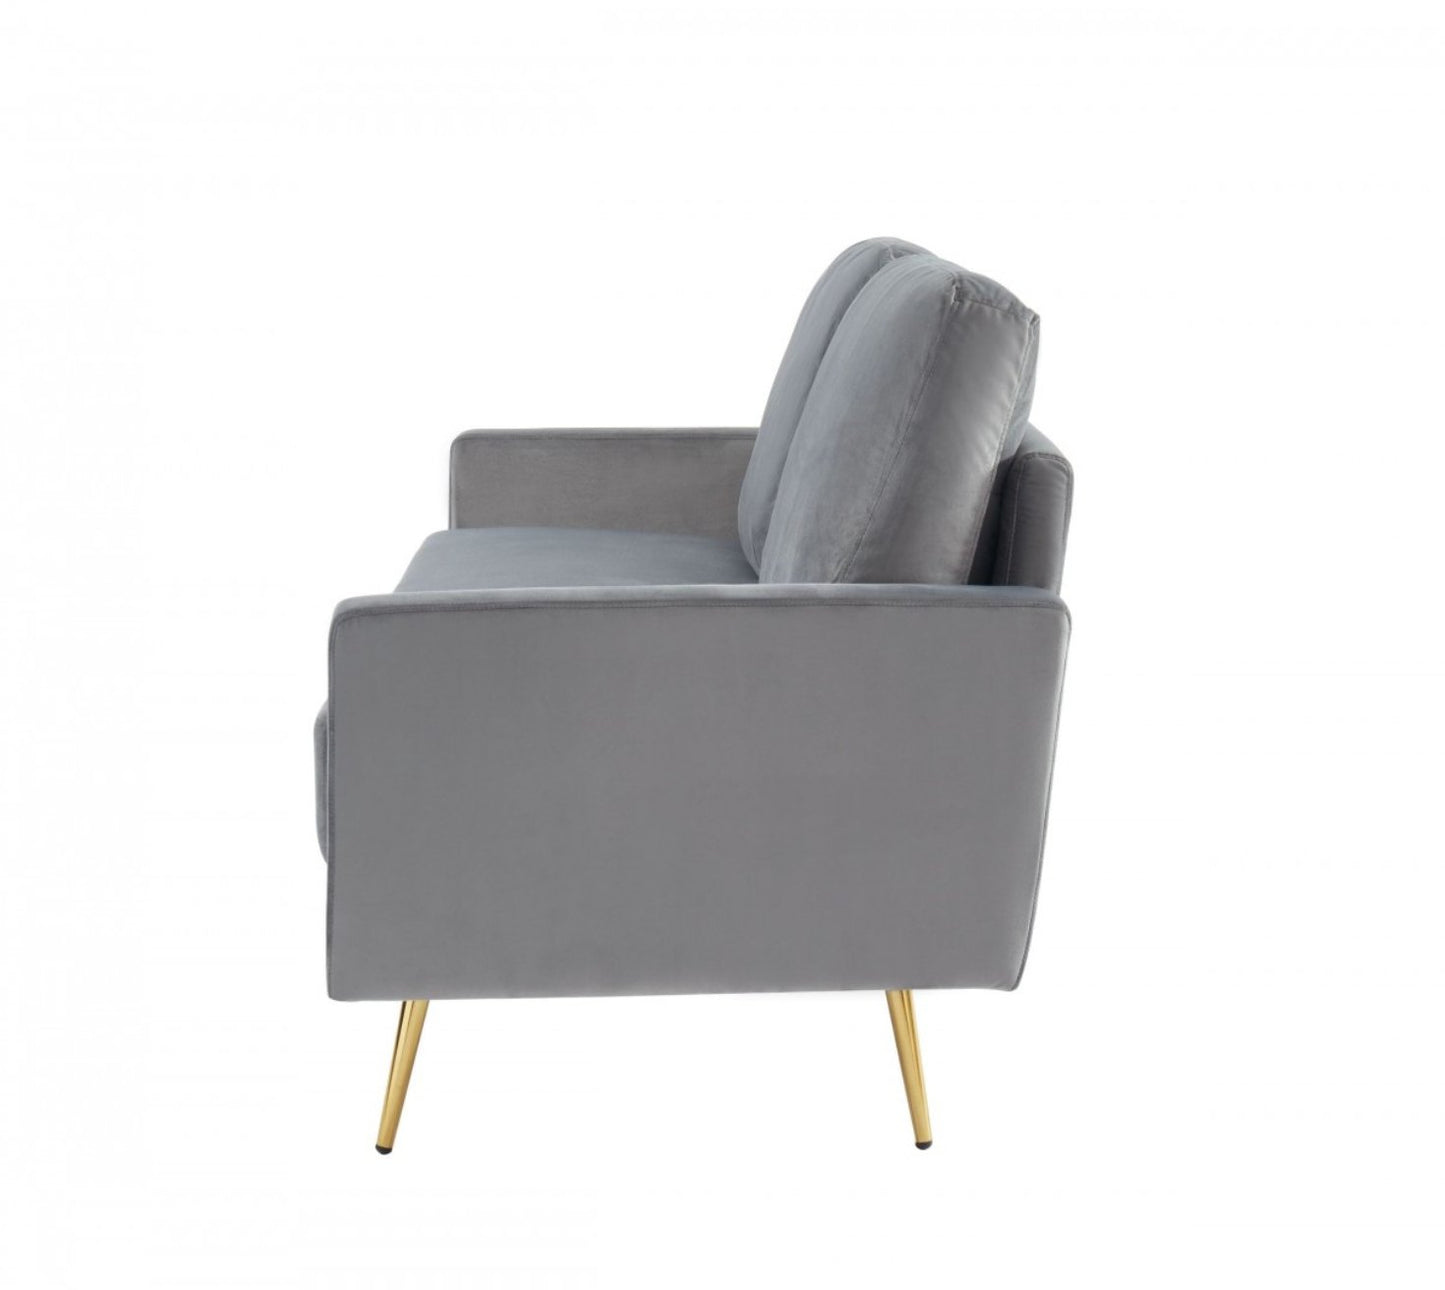 Gray Velvet Upholstered Brass Leg Loveseat Sofa - 72" - Revel Sofa 